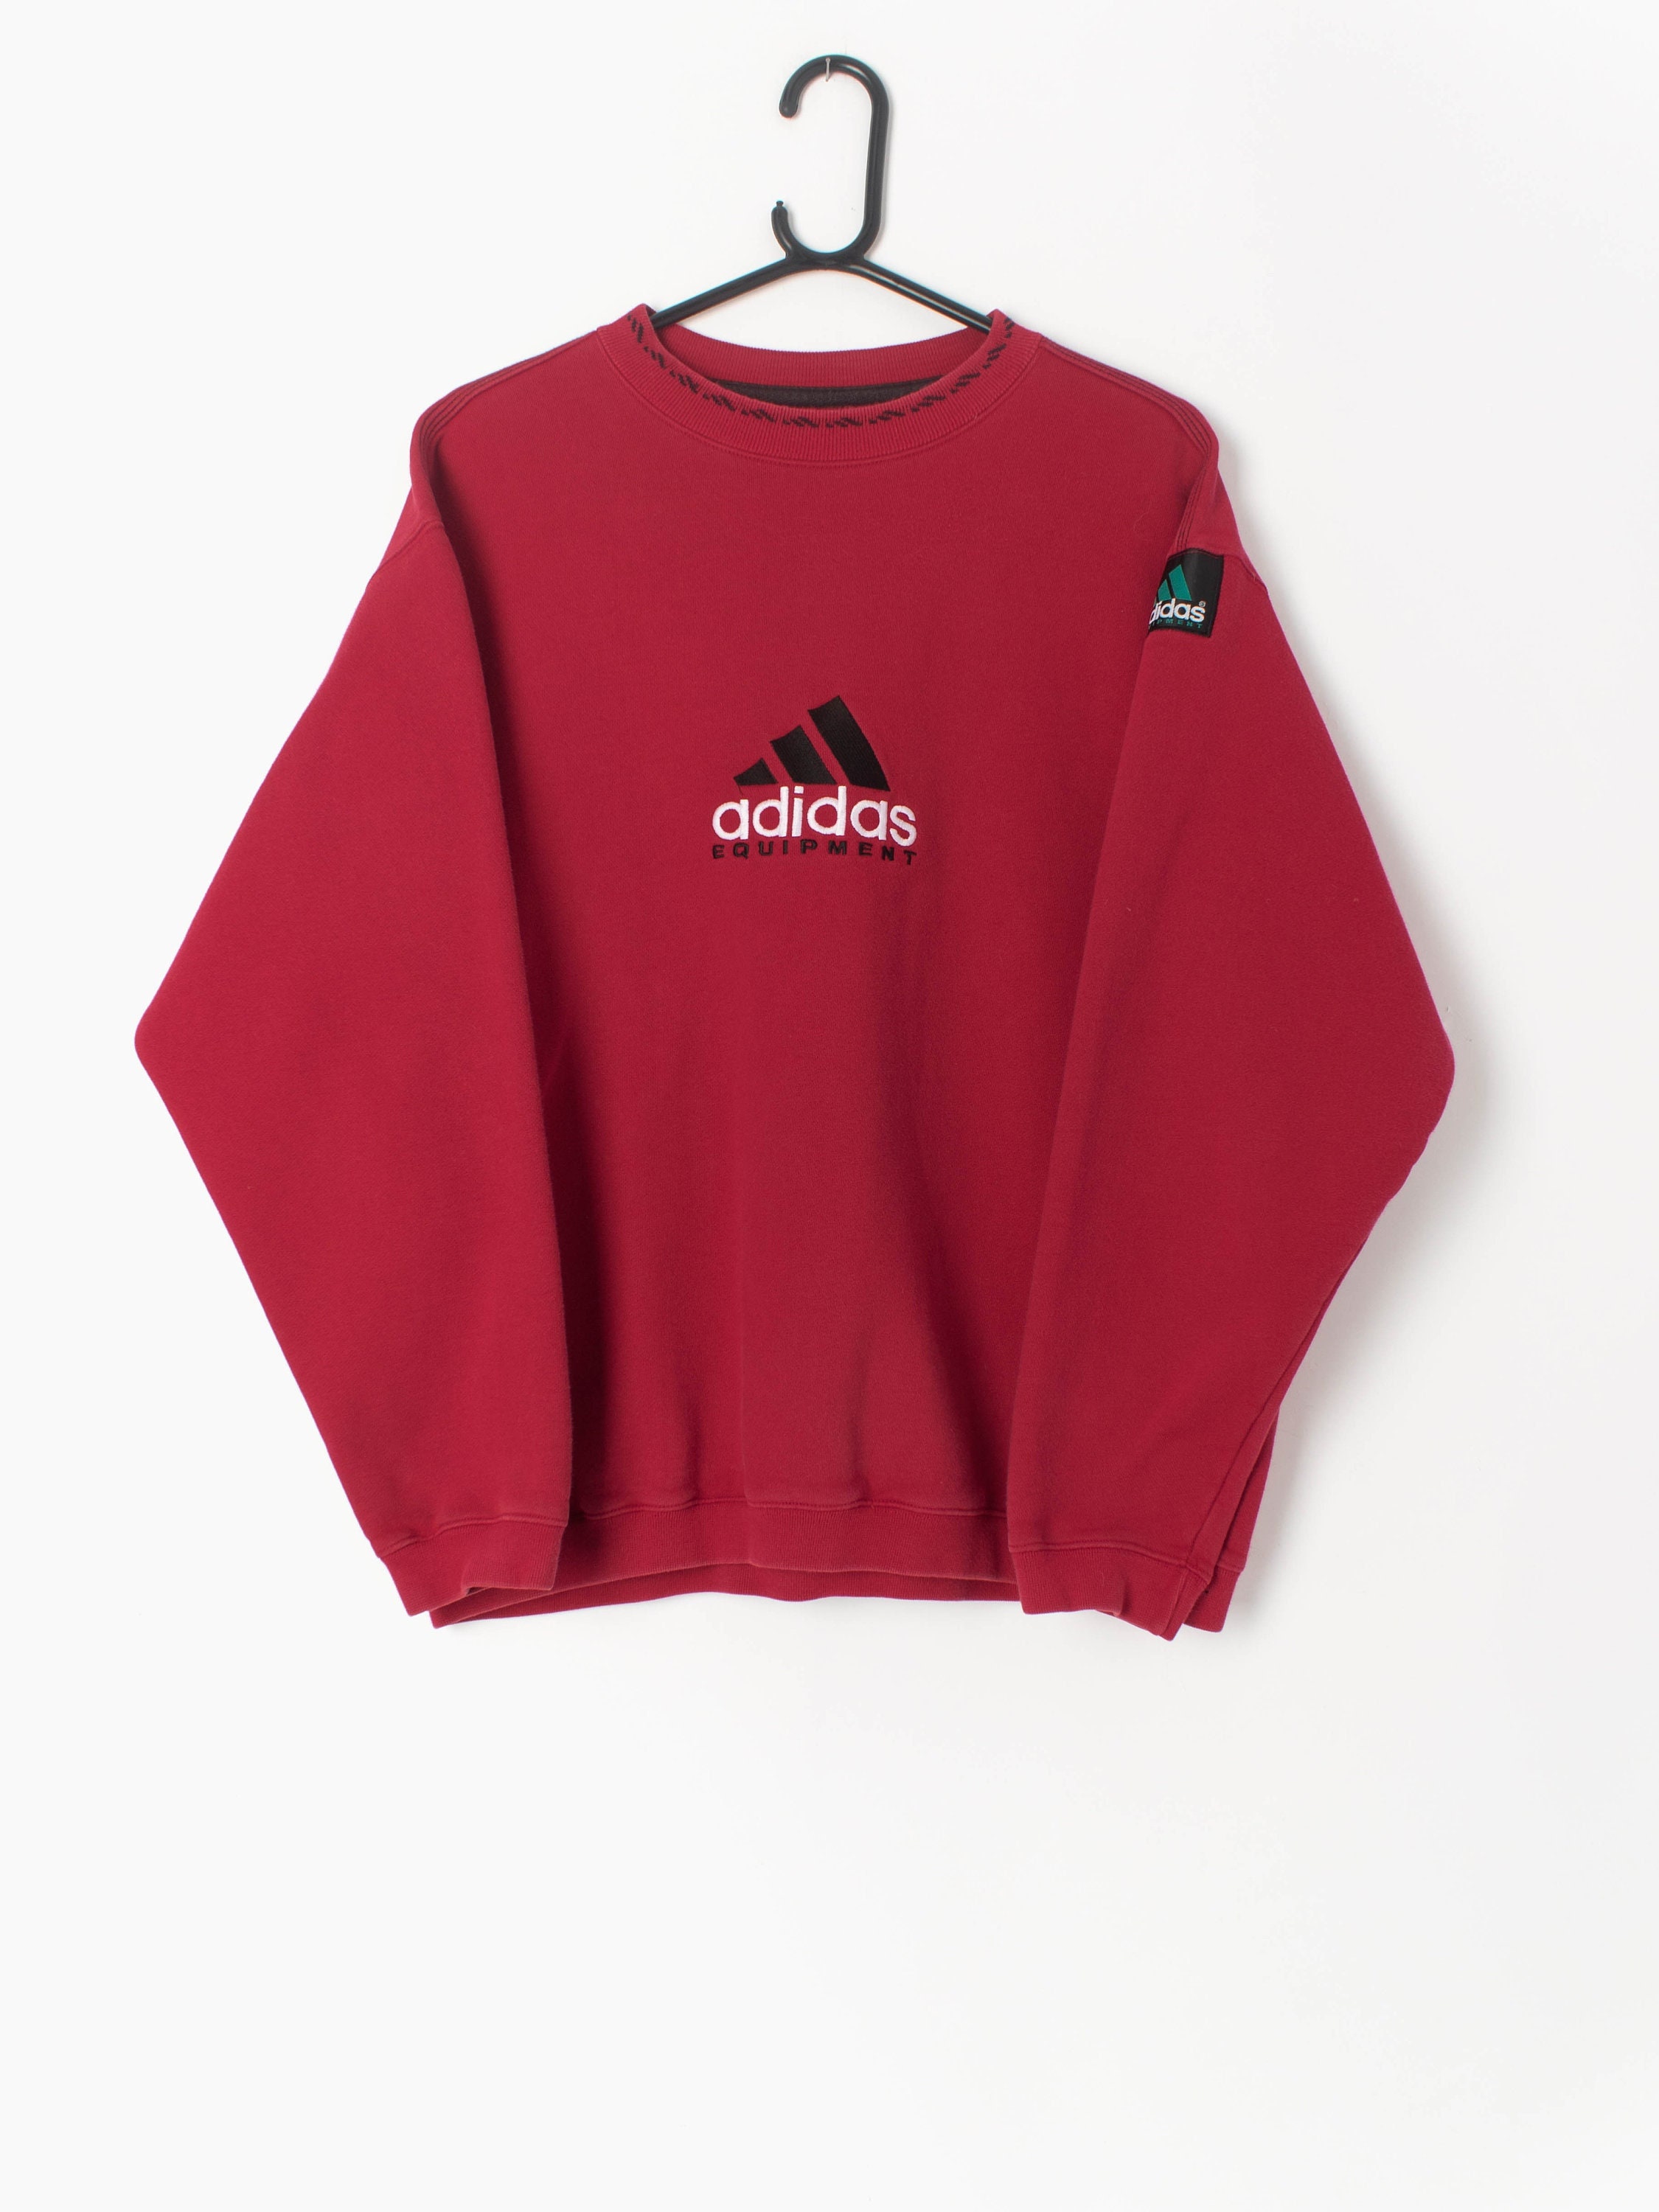 Progreso Estudiante Gratificante Vintage 90s Adidas Equipment Sweatshirt Spellout in Red - Etsy